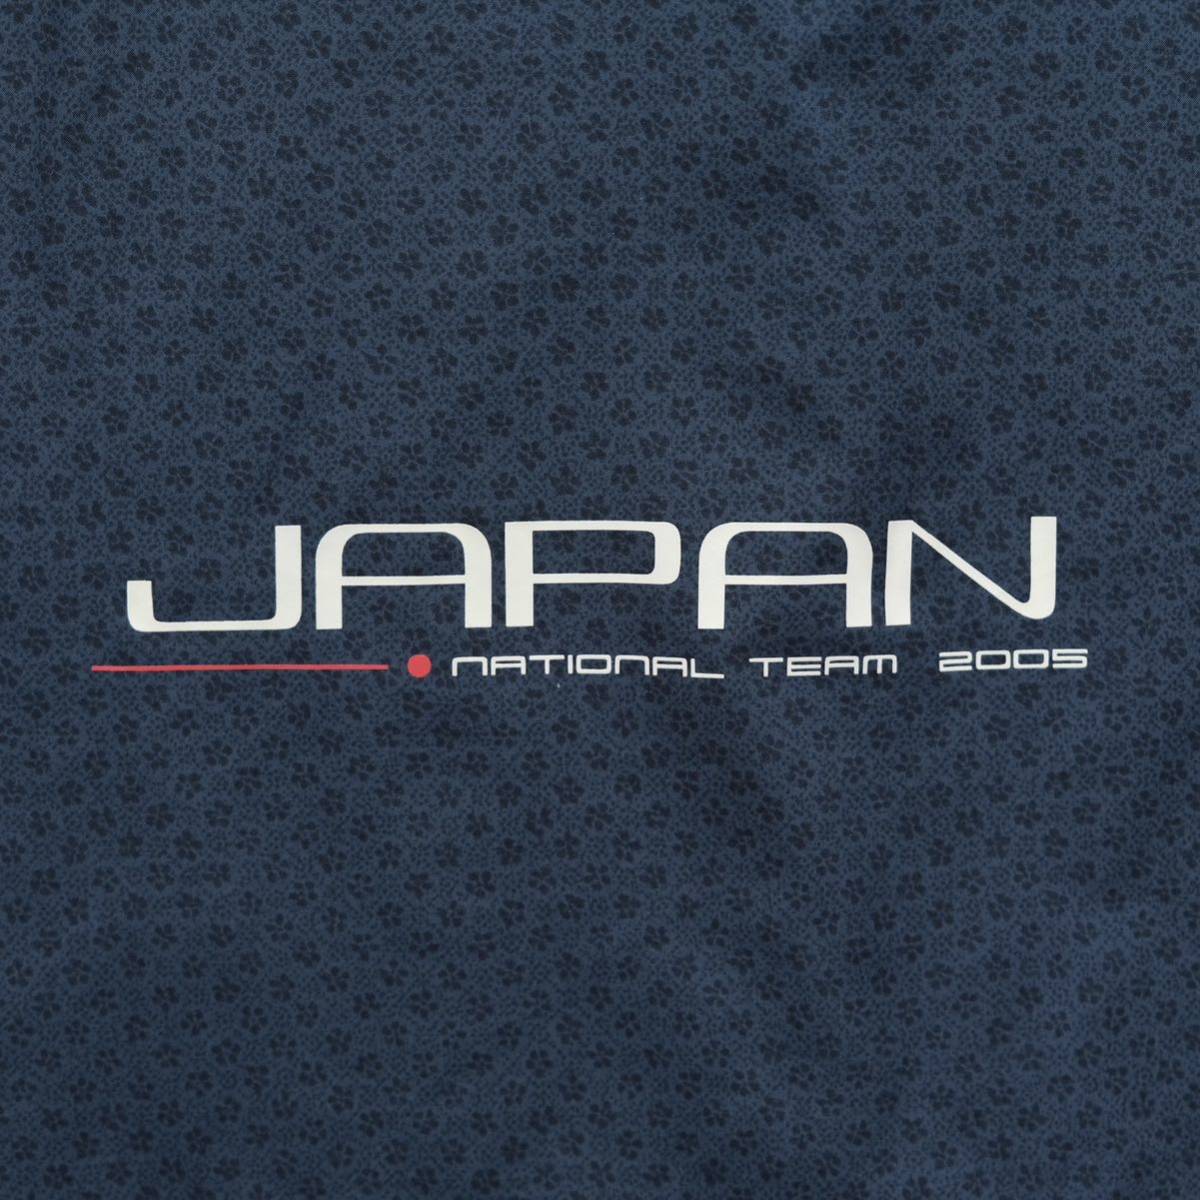 【送料無料】MIZUNO(ミズノ)/SAJ(全日本スキー連盟) 2005 スキー日本代表/ジャパンナショナルチーム/ウィンドジャケット+パンツ/上下セット_画像8